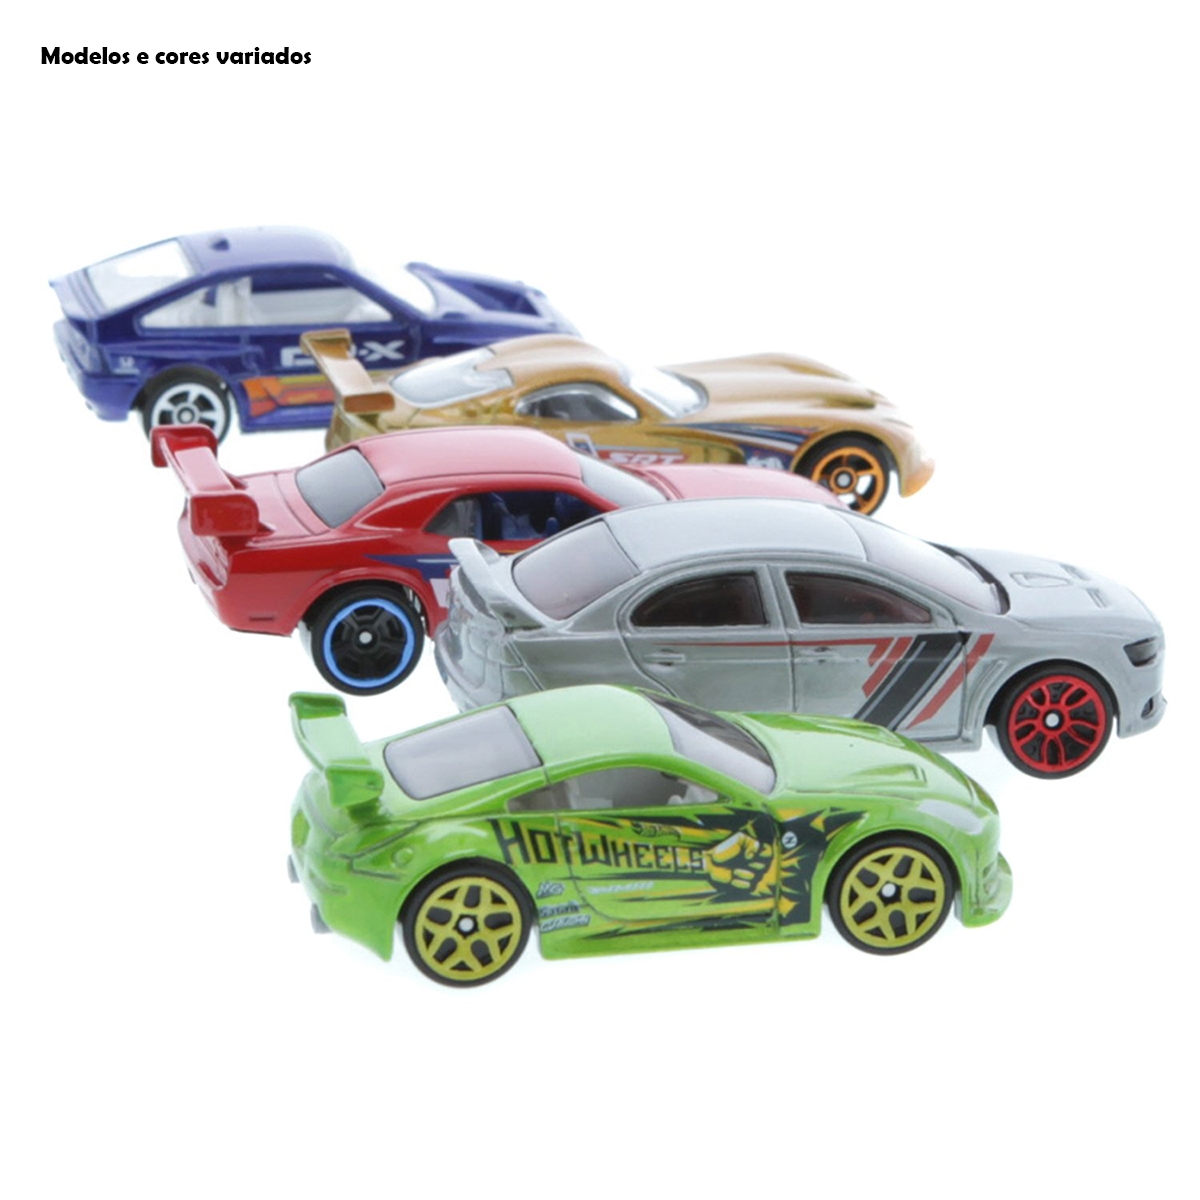 Carrinhos Hot Wheels Original Kit com 5 unidades sortido Mattel